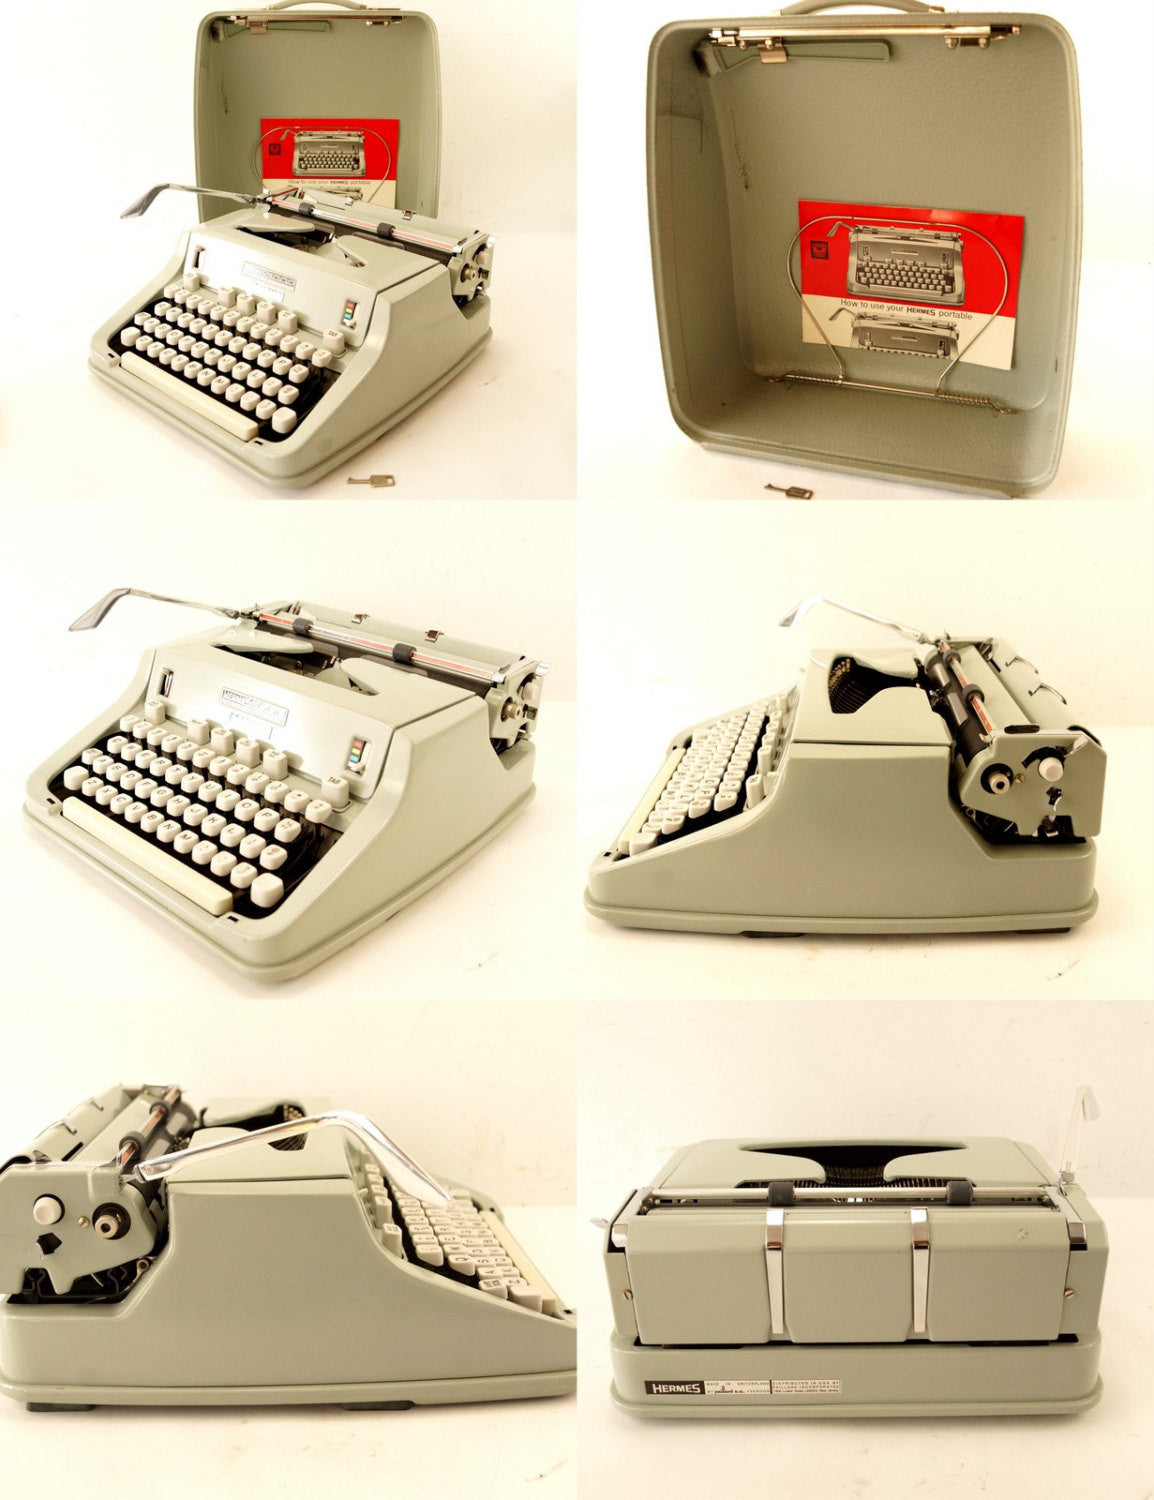 hermes 3000 typewriter